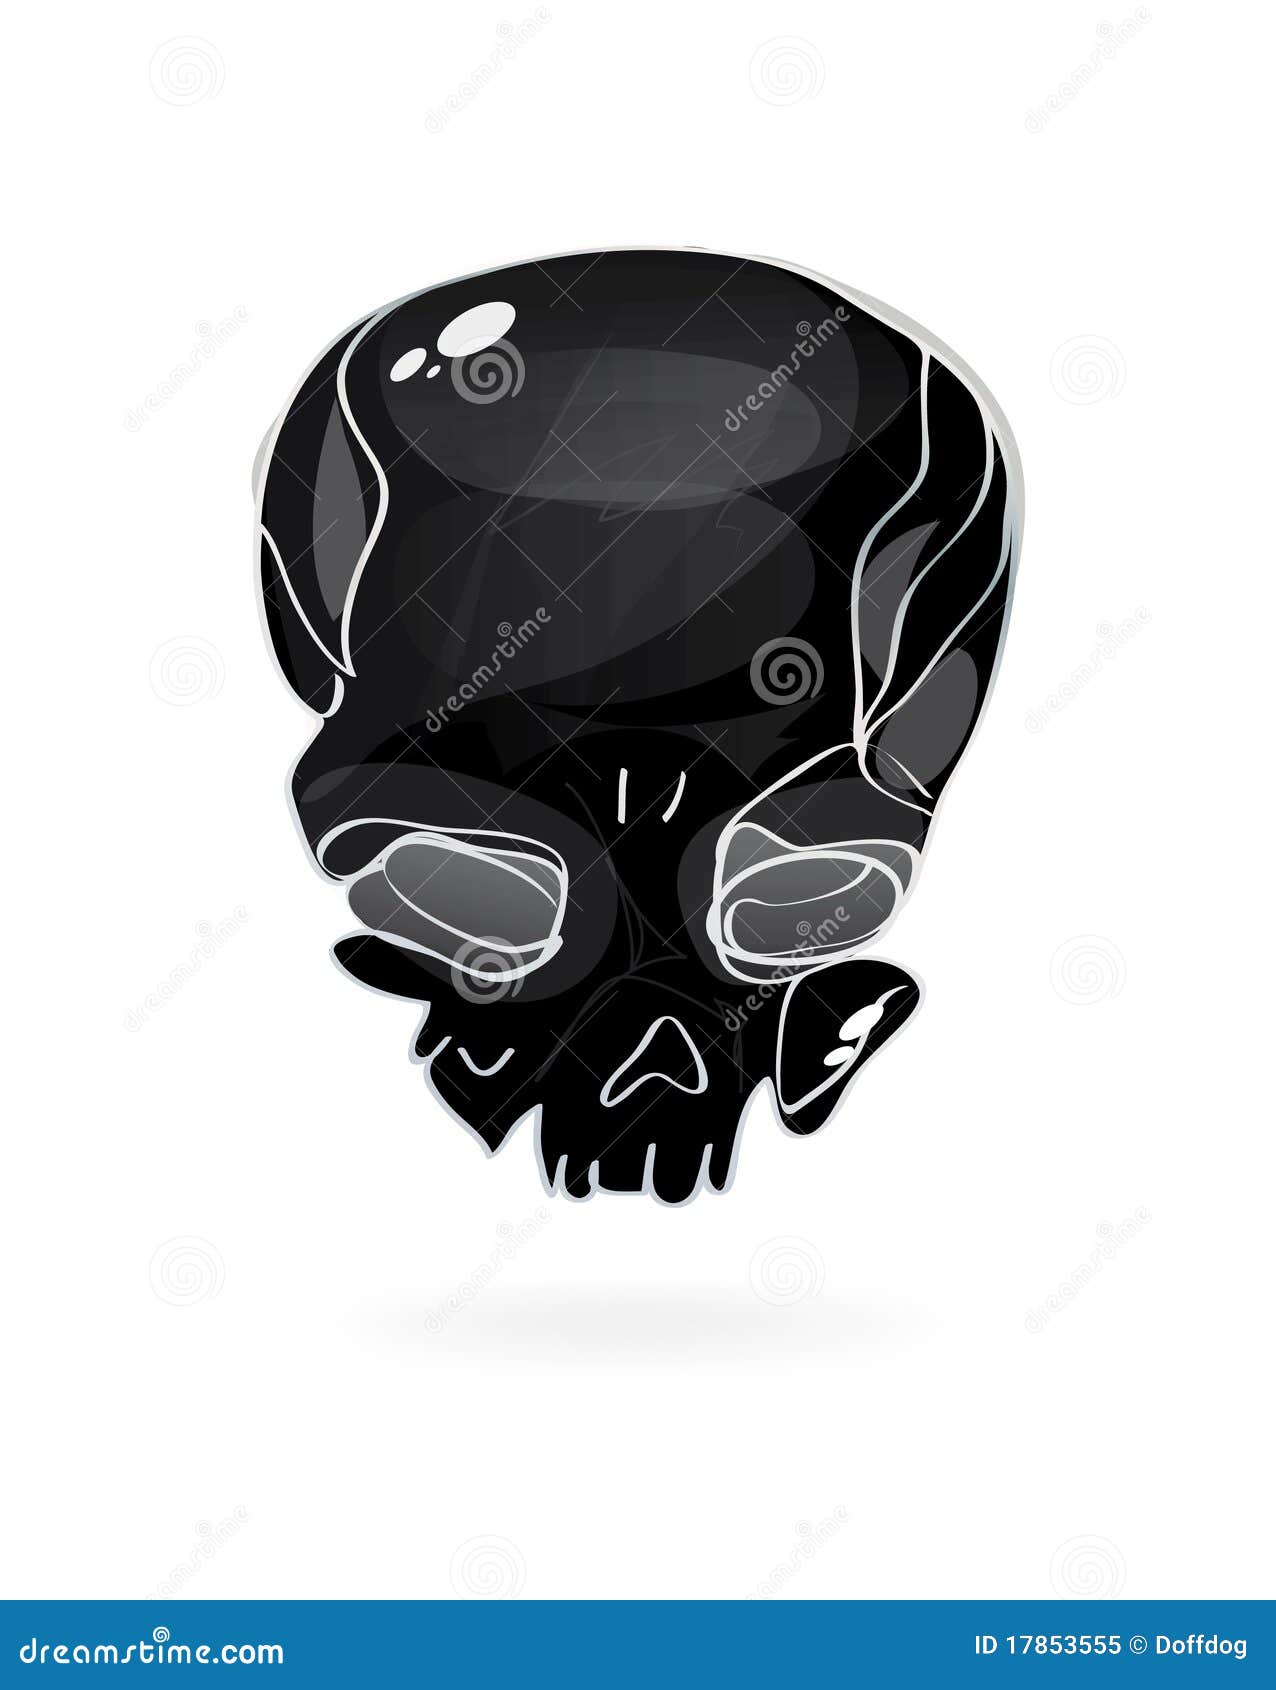 black-skull-symbol-17853555.jpg